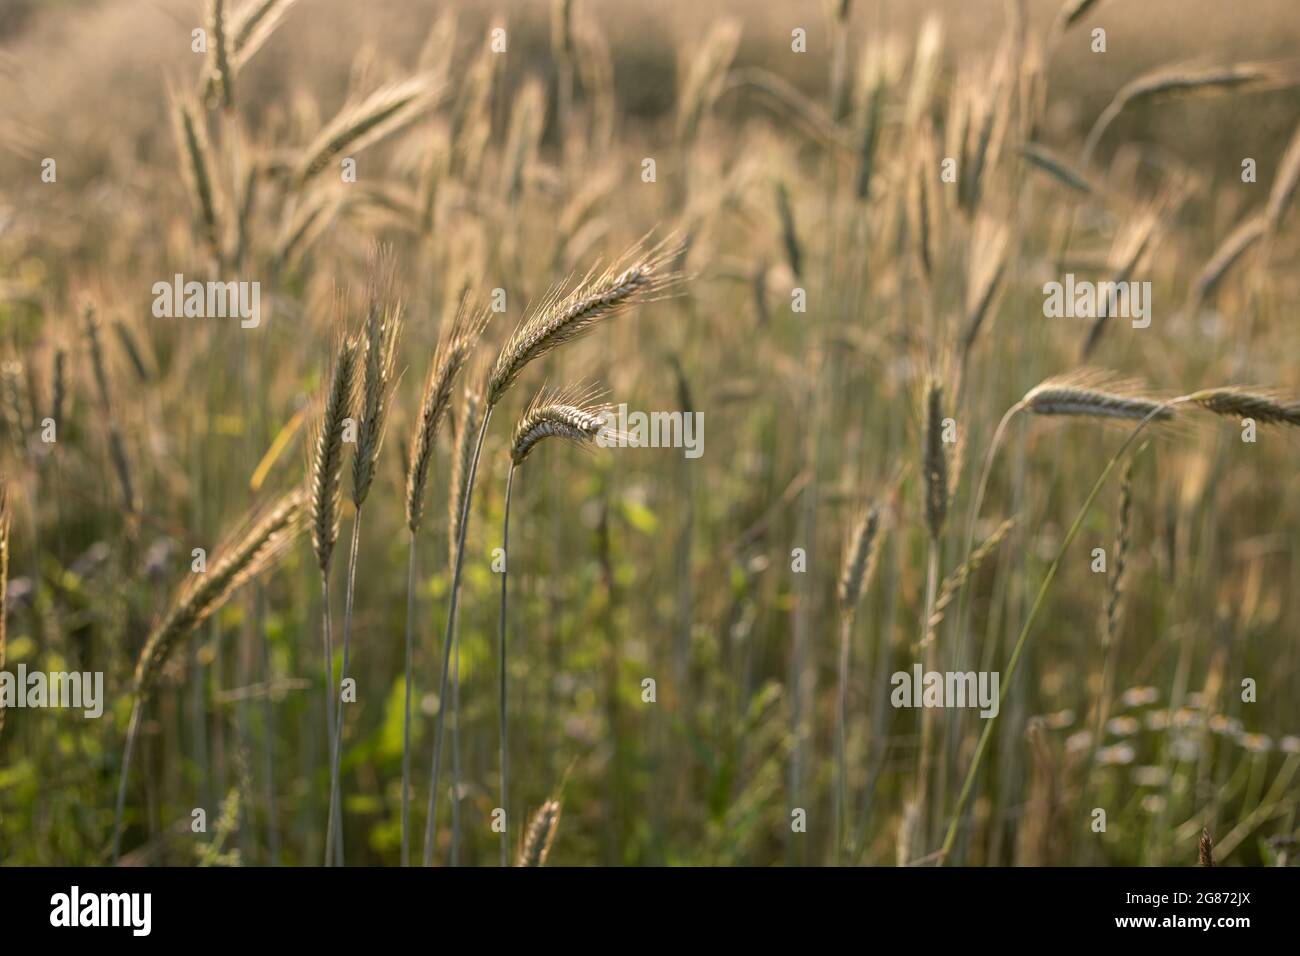 Landwirtschaftliche Feld, wo Roggen wächst, Landschaft von landwirtschaftlichen Nutzpflanzen Roggen hinterleuchtet mit Sonnenuntergang goldenes Licht Stockfoto